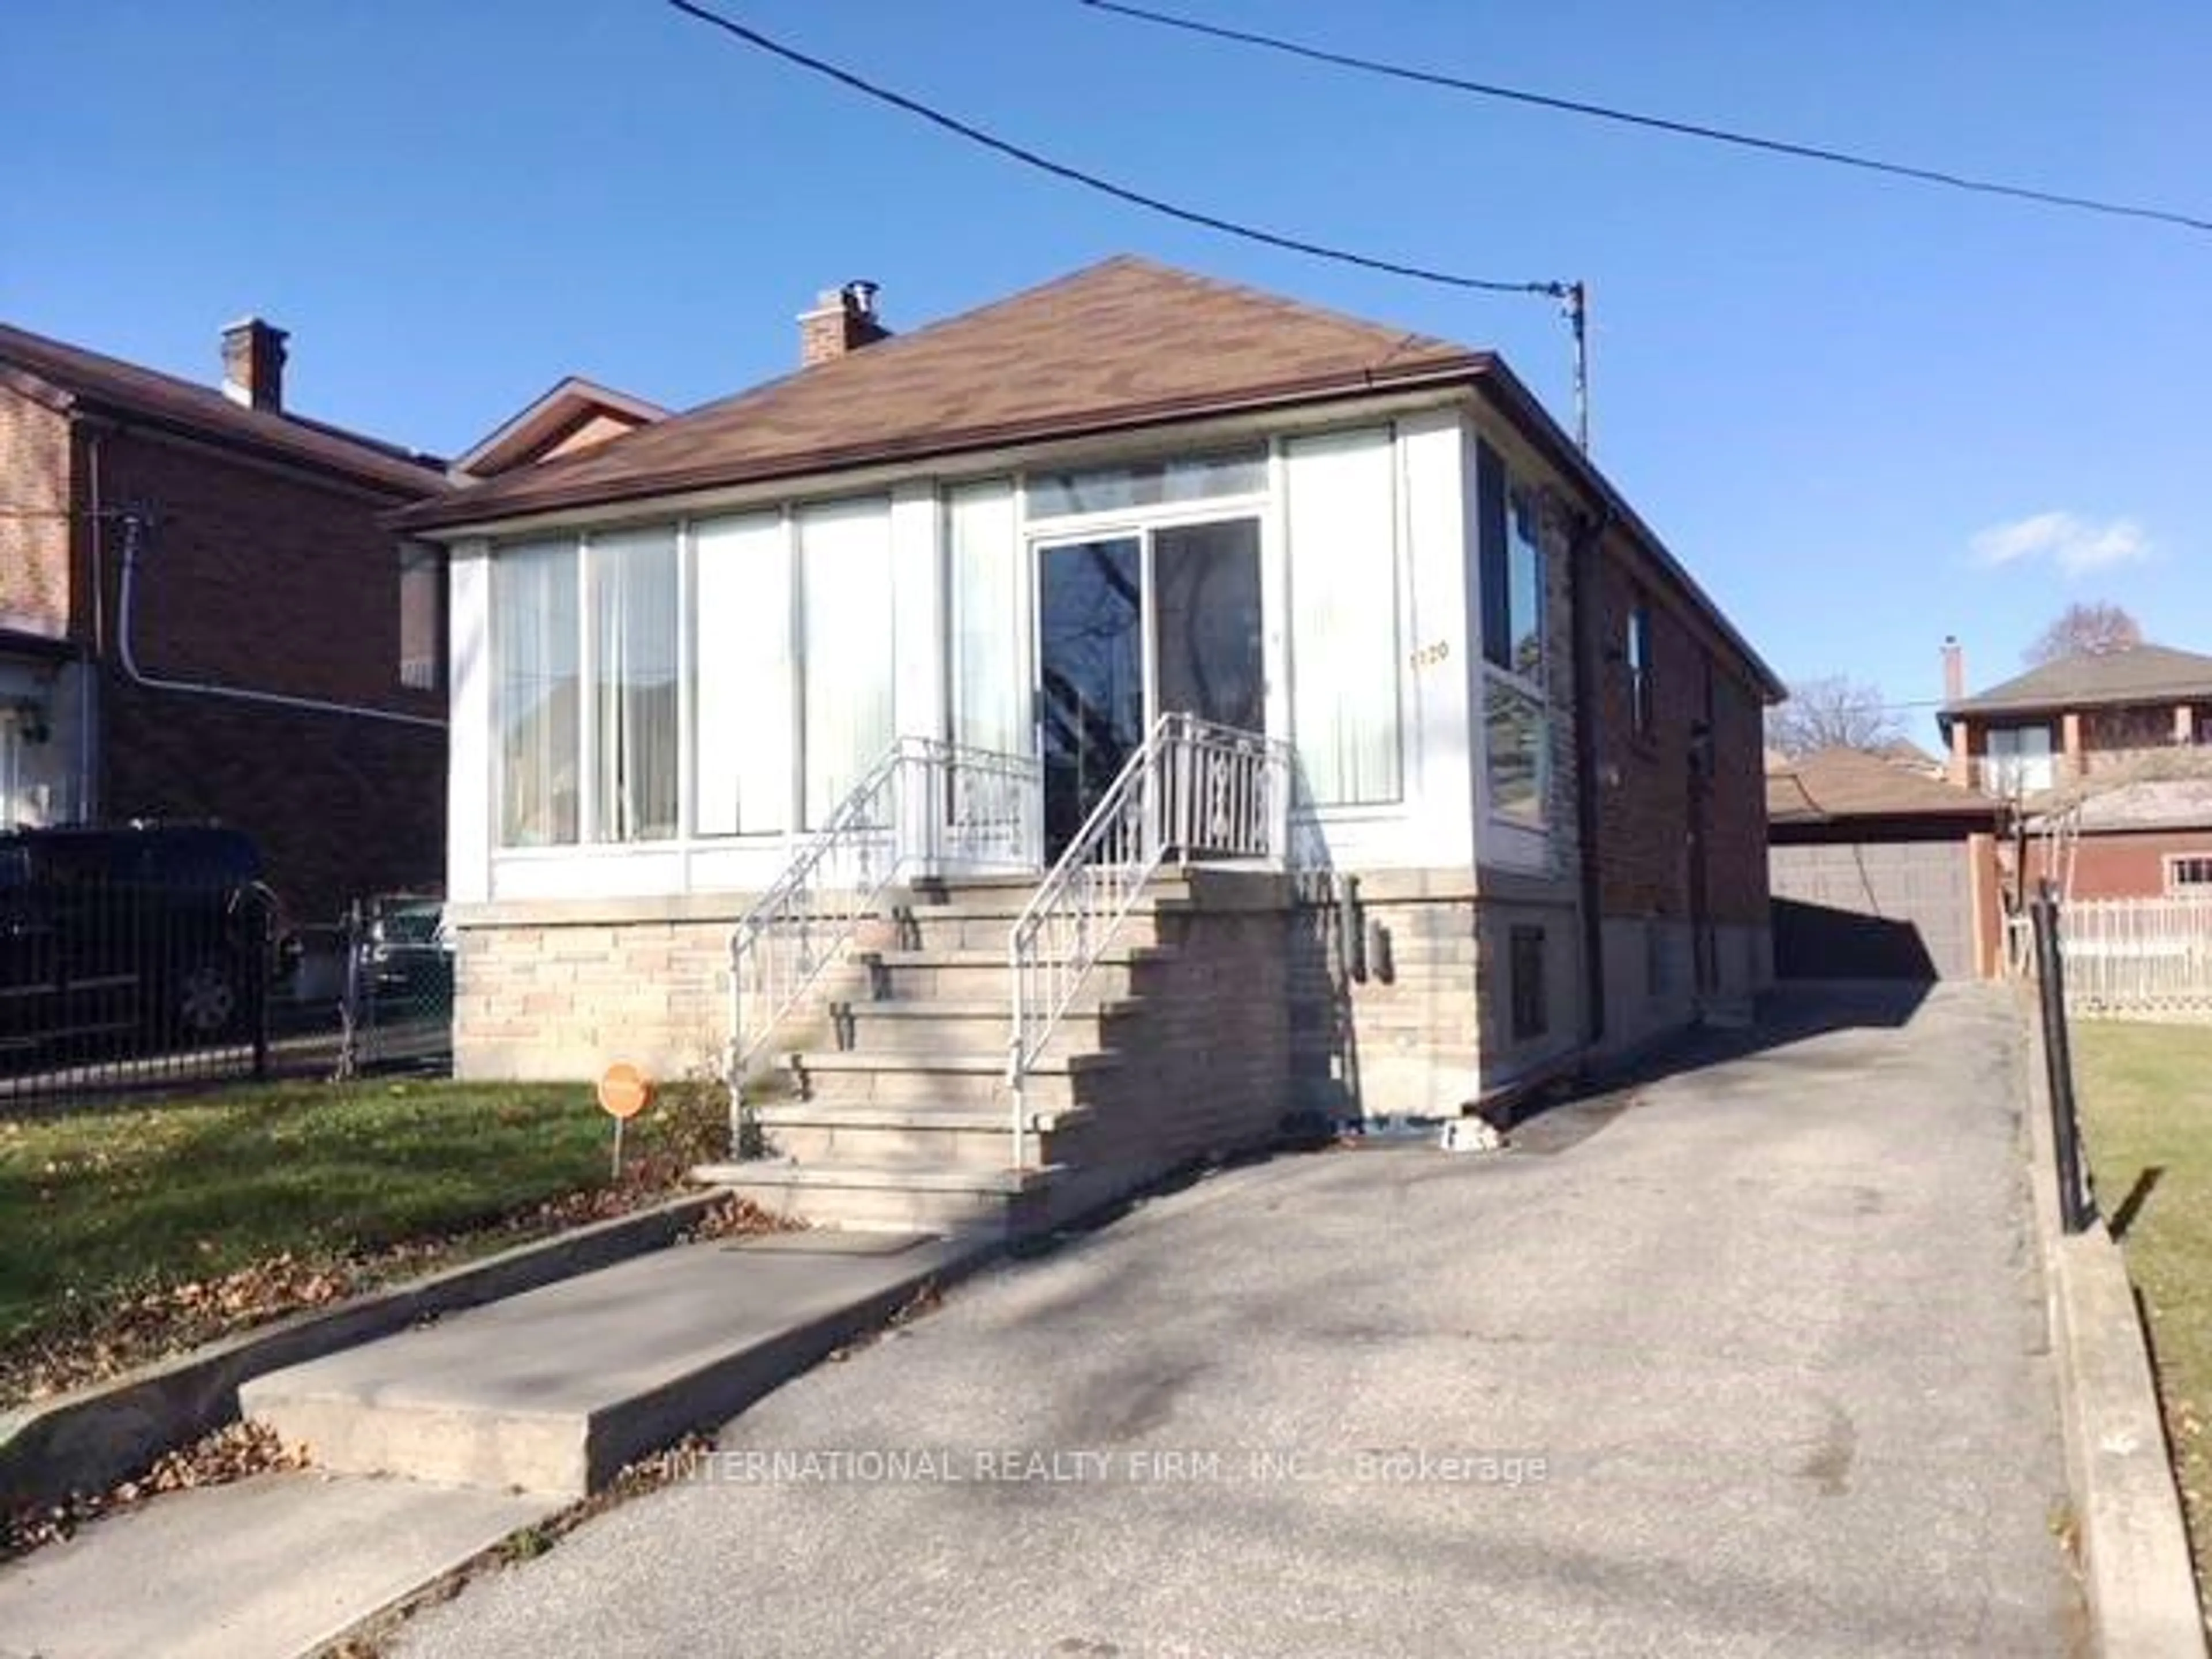 Frontside or backside of a home for 1120 Glencairn Ave, Toronto Ontario M6B 2B4